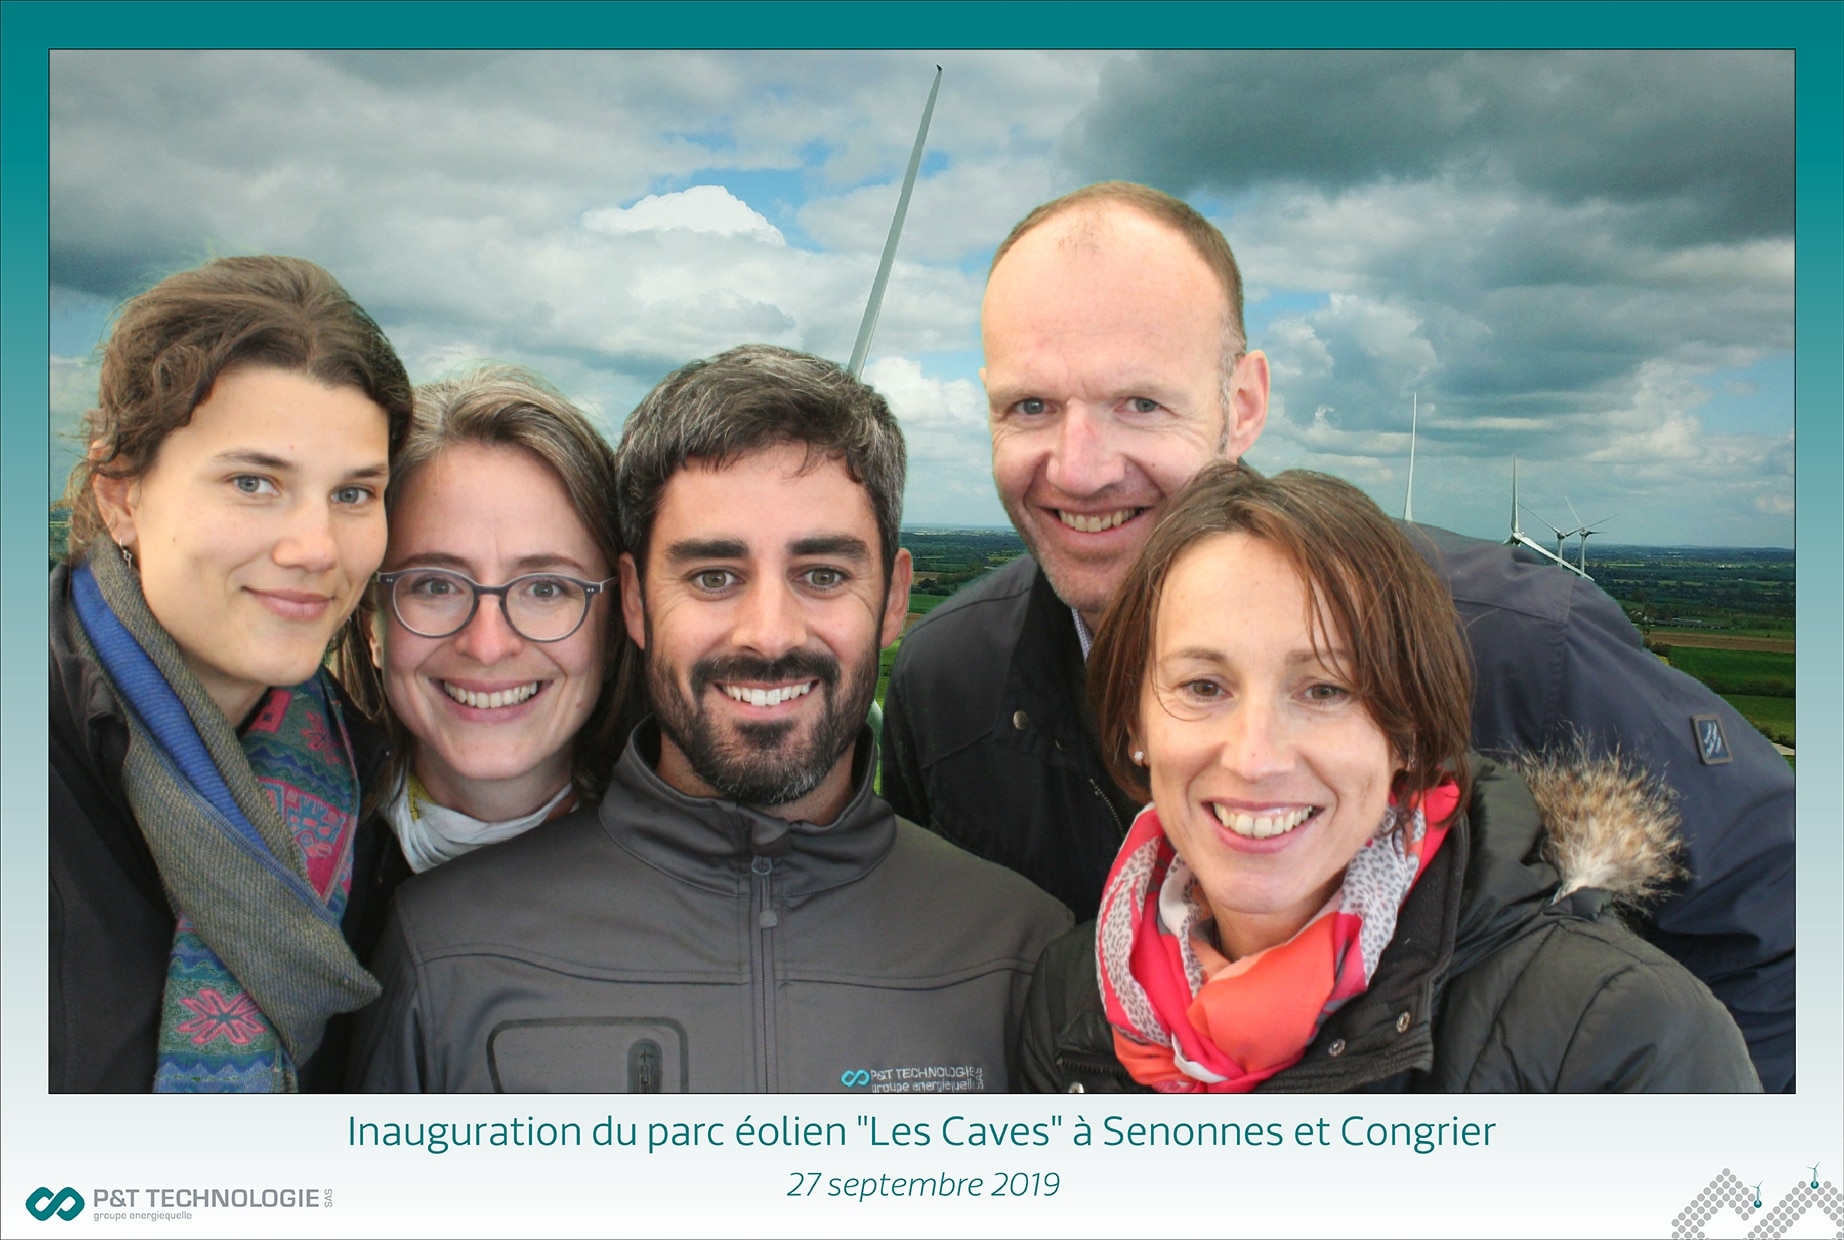 Selfie personnalisé au parc éolien Les Caves au sud de la Mayenne - animation borne photo fond vert inauguration Laval et en Mayenne